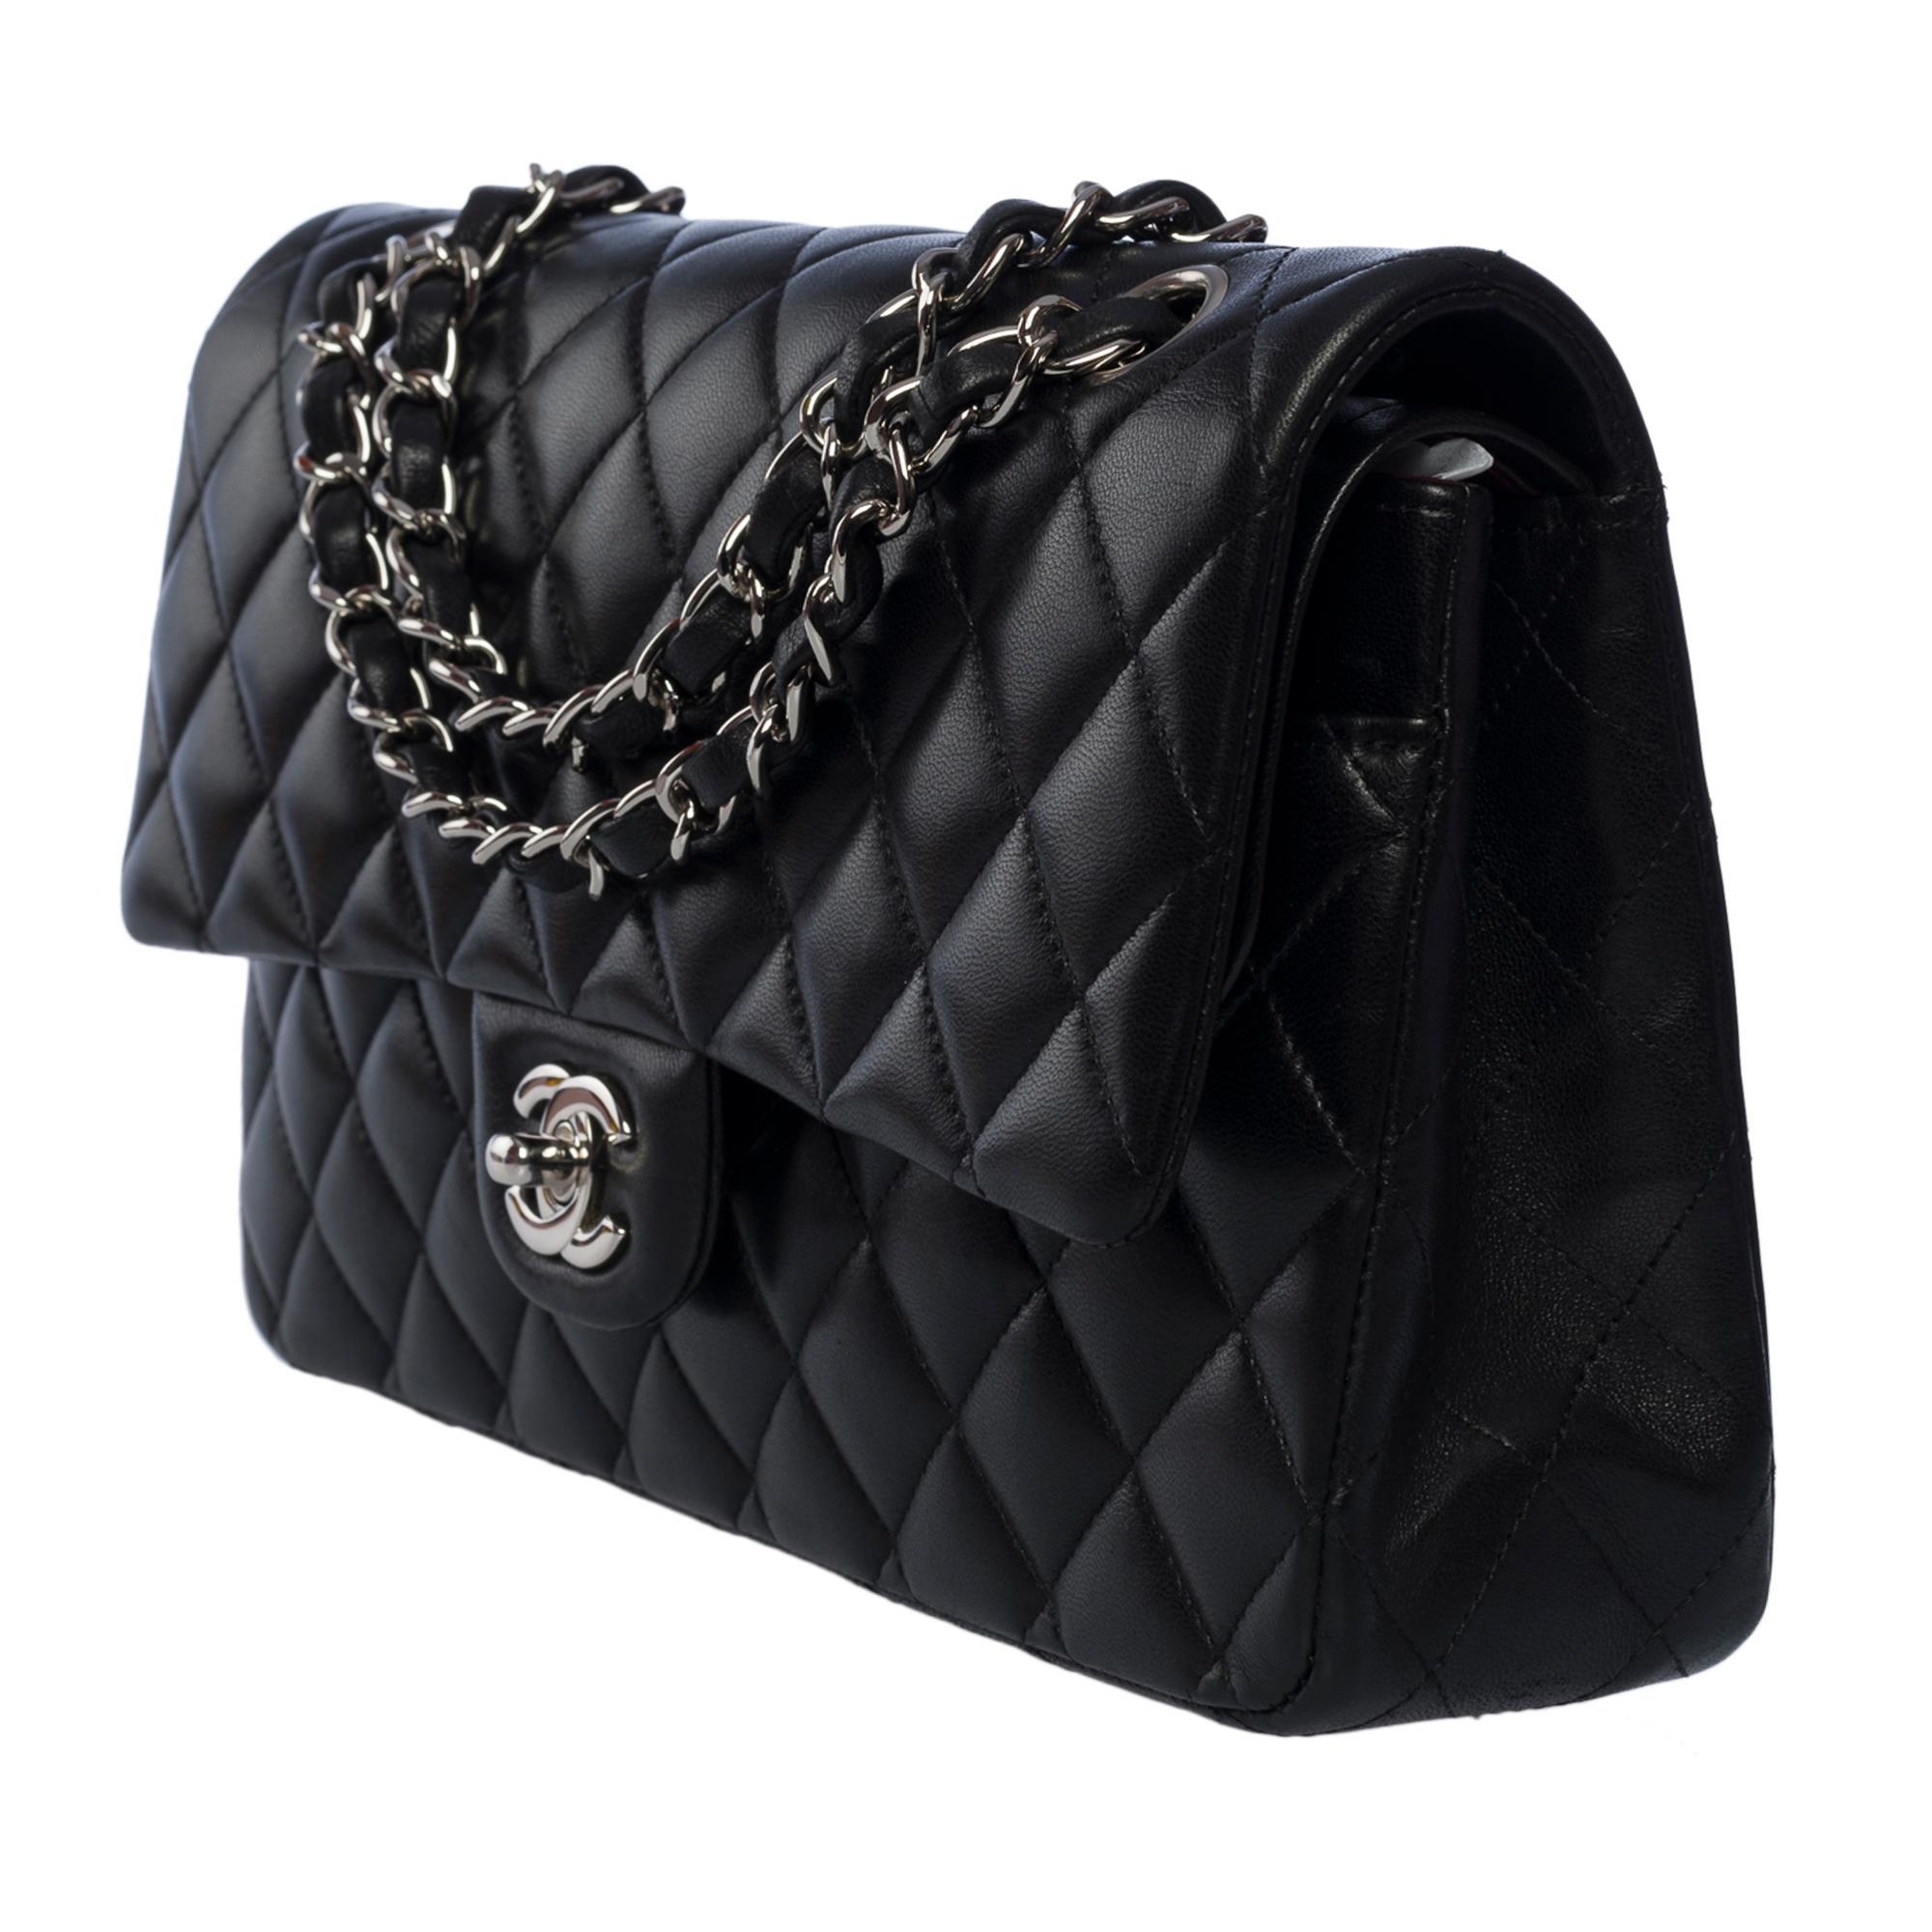 Women's Chanel Timeless Medium 25cm double flap shoulder bag in black lambskin, SHW